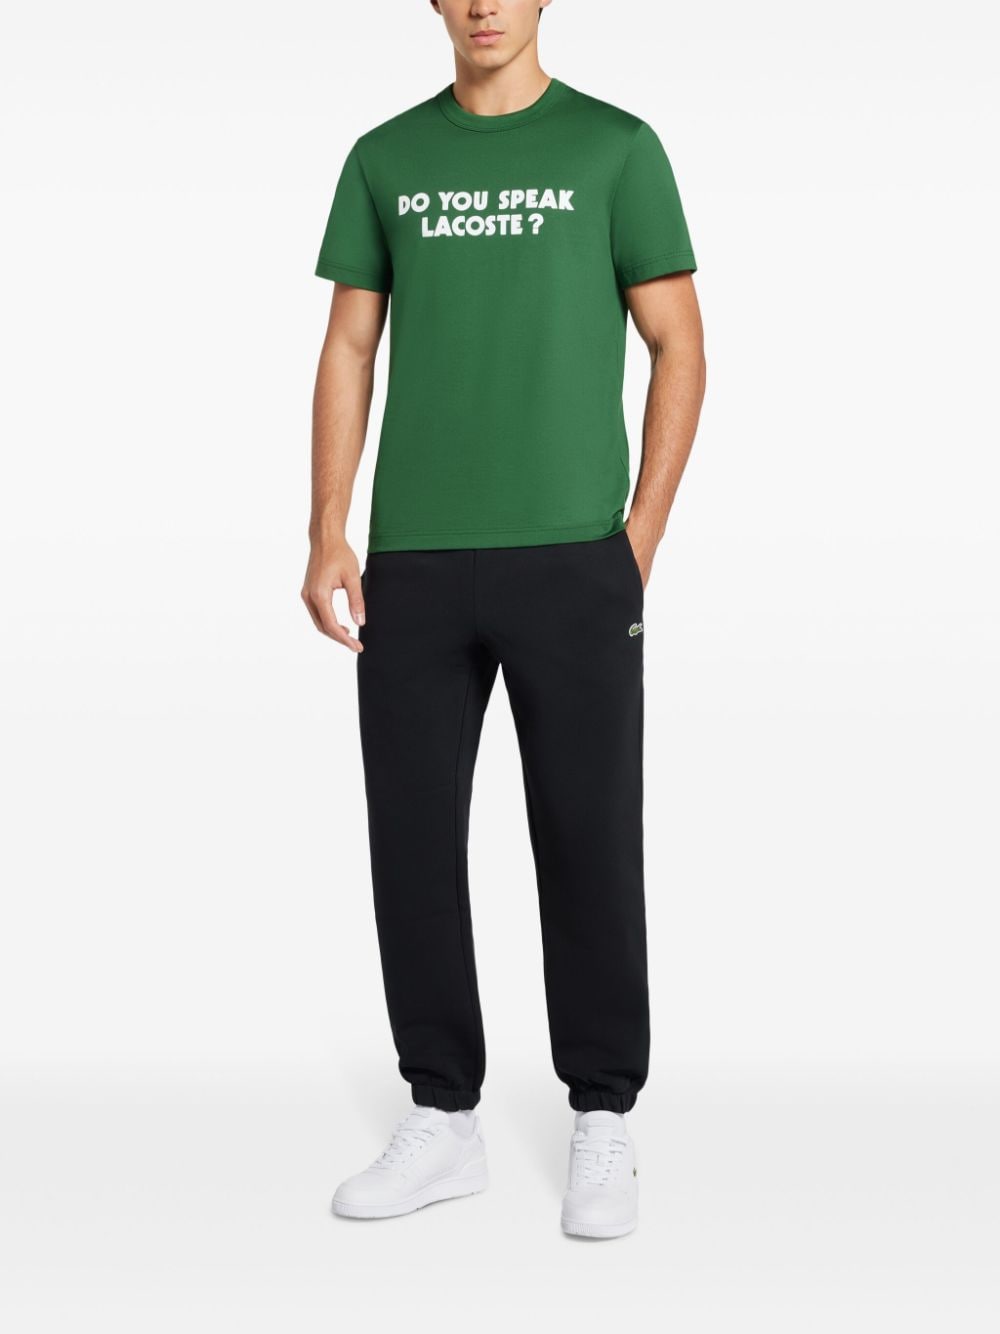 Lacoste T-shirt met tekst Groen